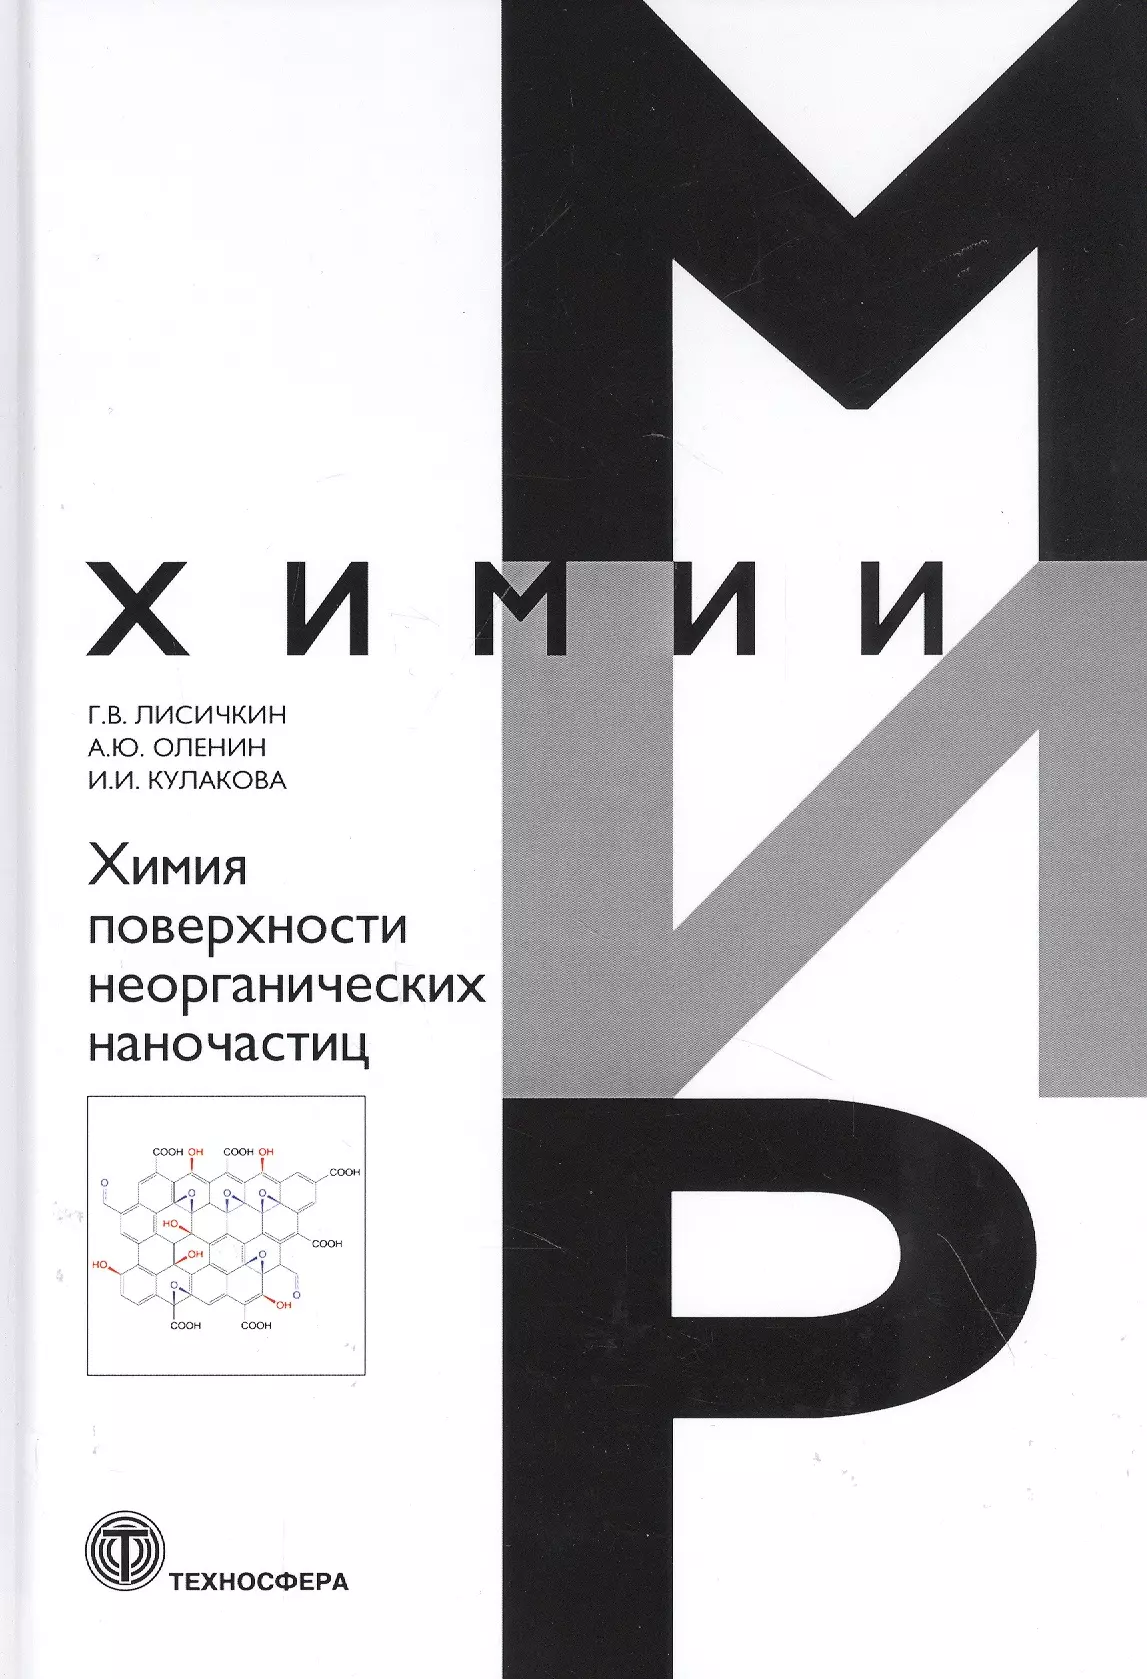 Лисичкин Георгий Васильевич - Химия поверхности неорганических наночастиц